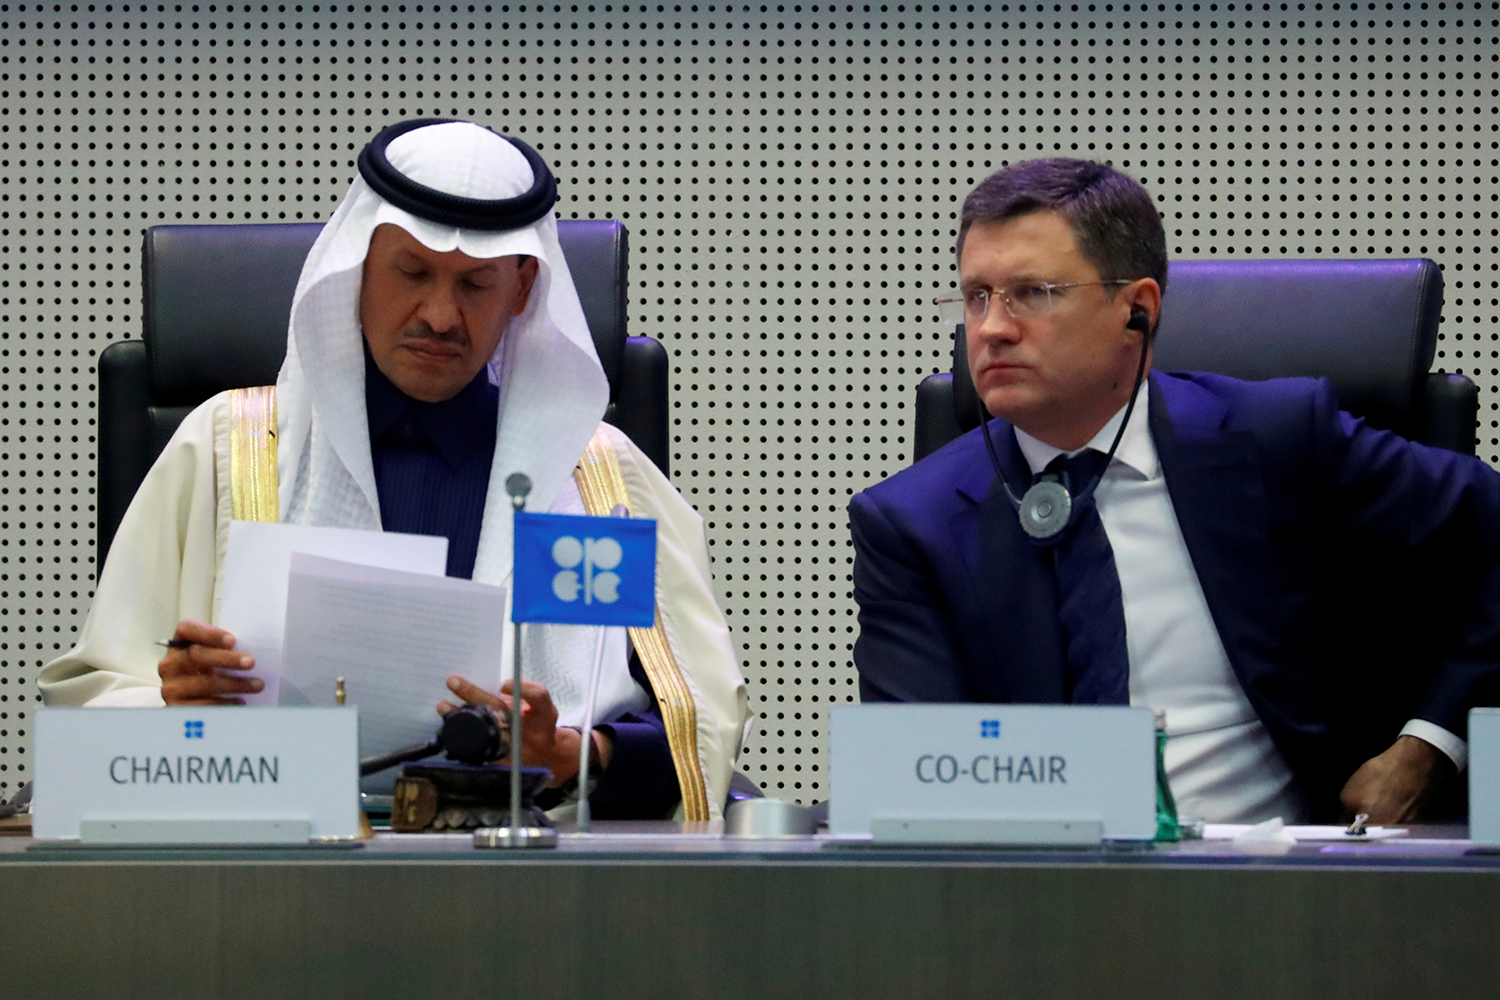 نفت - عربستان سعودی و روسیه پیش از نشست اوپک پلاس در مورد استراتژی نفتی خود اختلاف نظر دارند